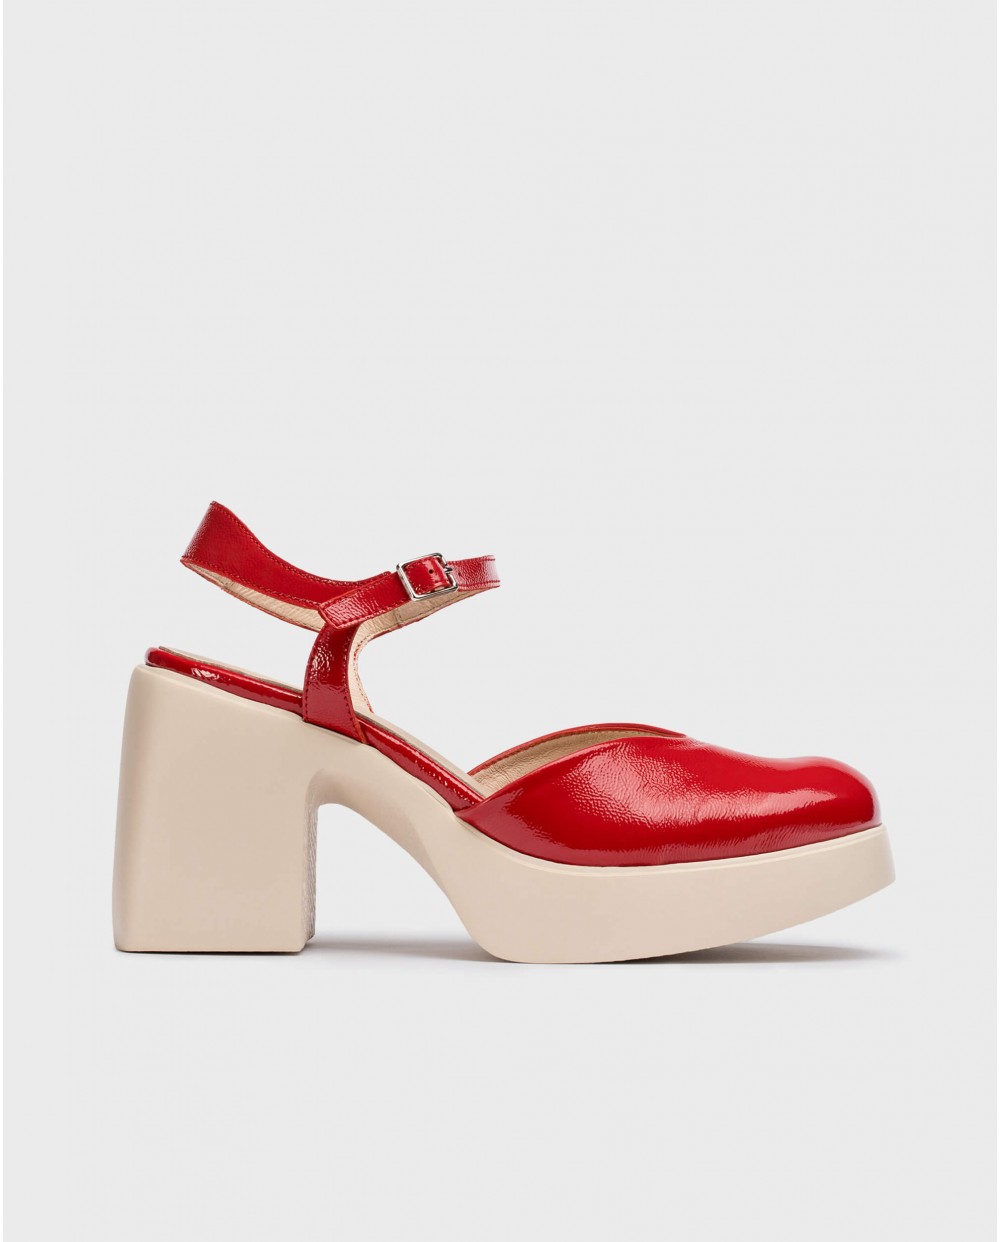 Wonders-Women shoes-Red JUANA Mary Jane